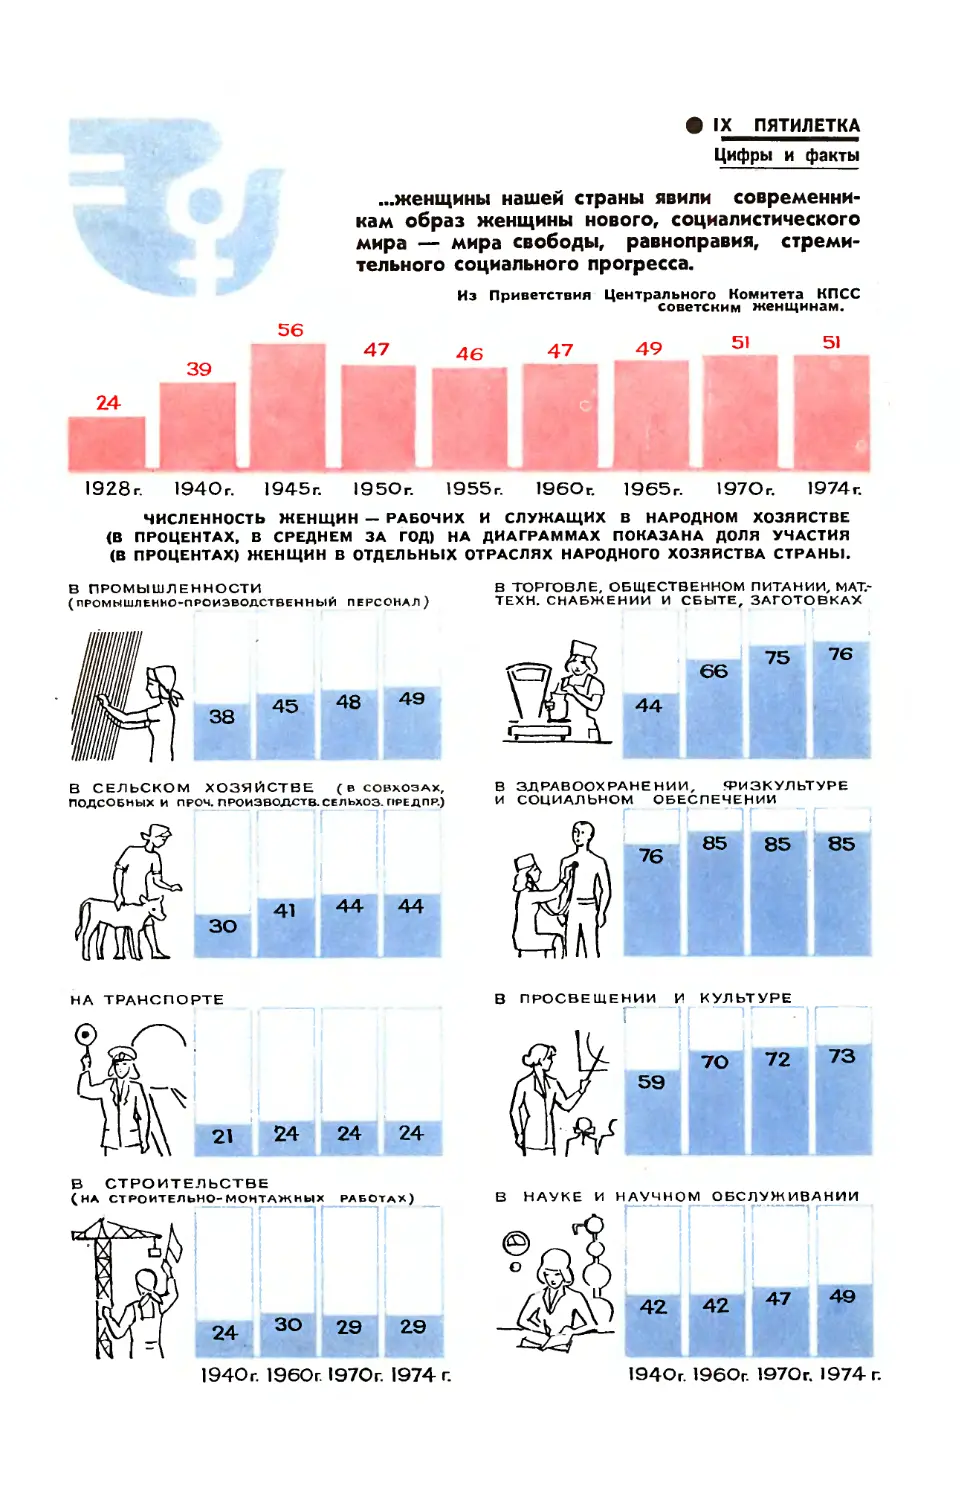 [Цифры и факты] — Рис. О. Рево — IX пятилетка. Советские женщины — активные участницы трудовой жизни страны.